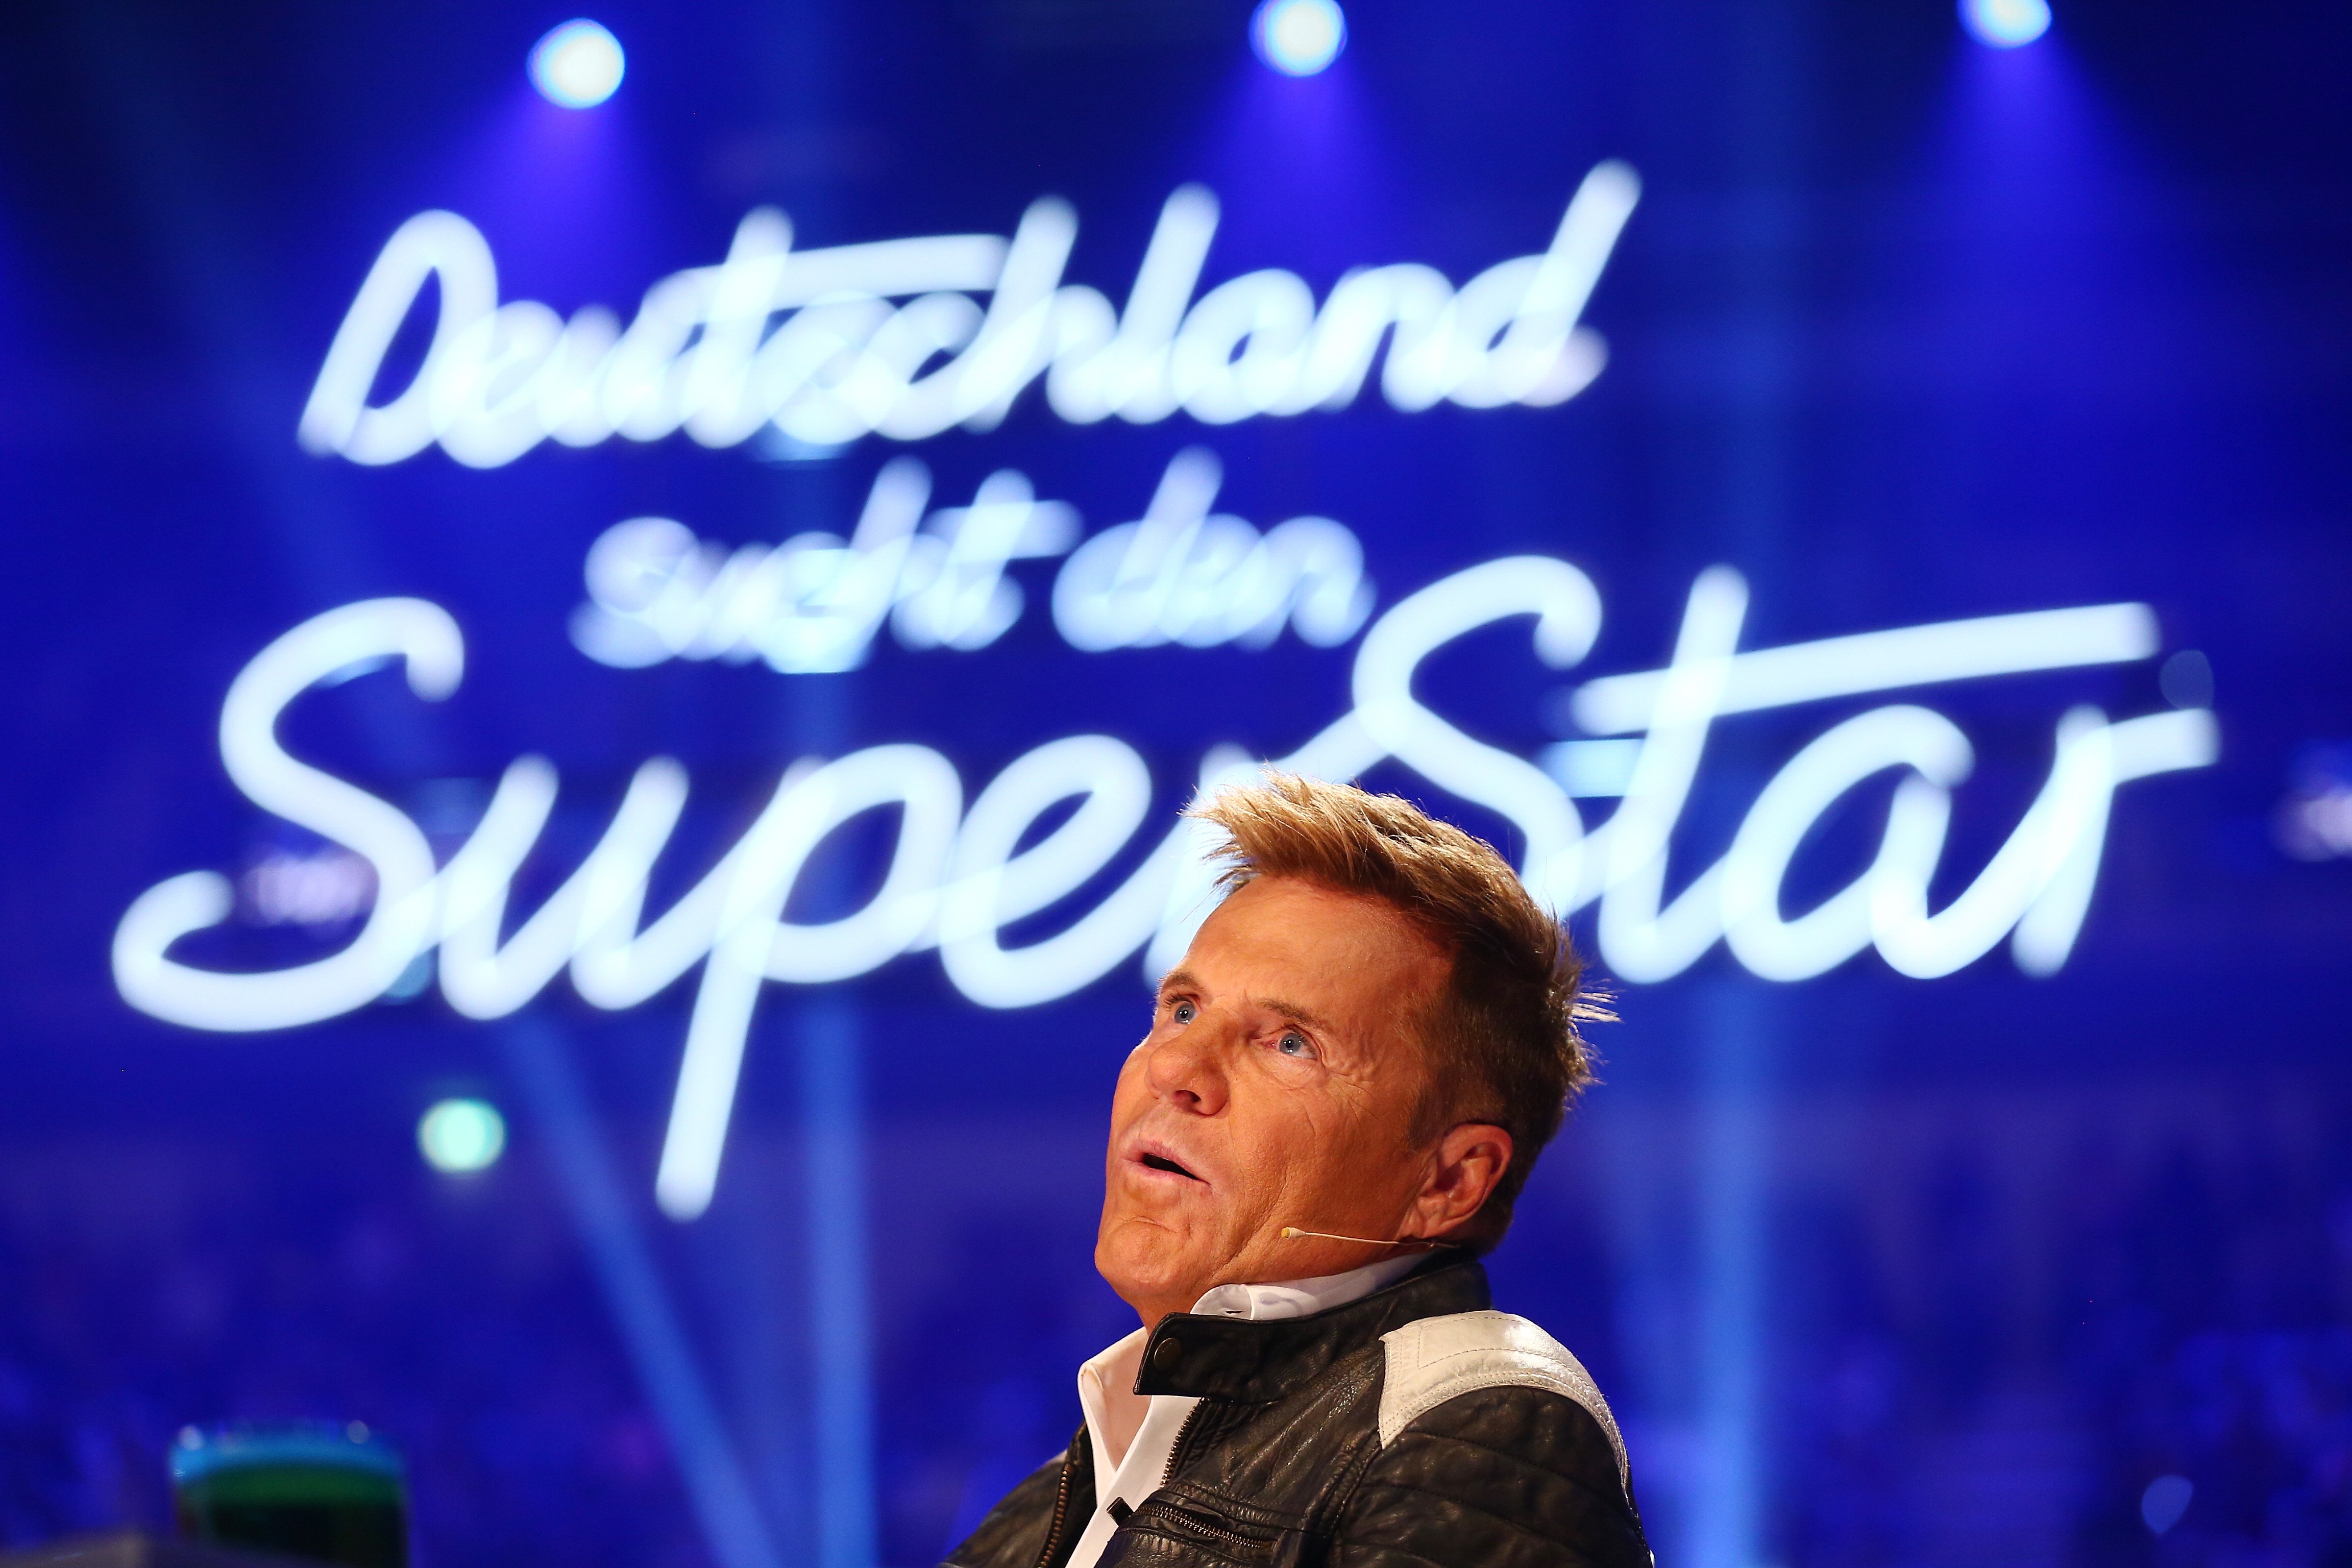 Dieter Bohlen beim Finale der Fernsehsendung 'Deutschland sucht den Superstar' am 7. Mai 2016 in Düsseldorf. | Quelle: Getty Images